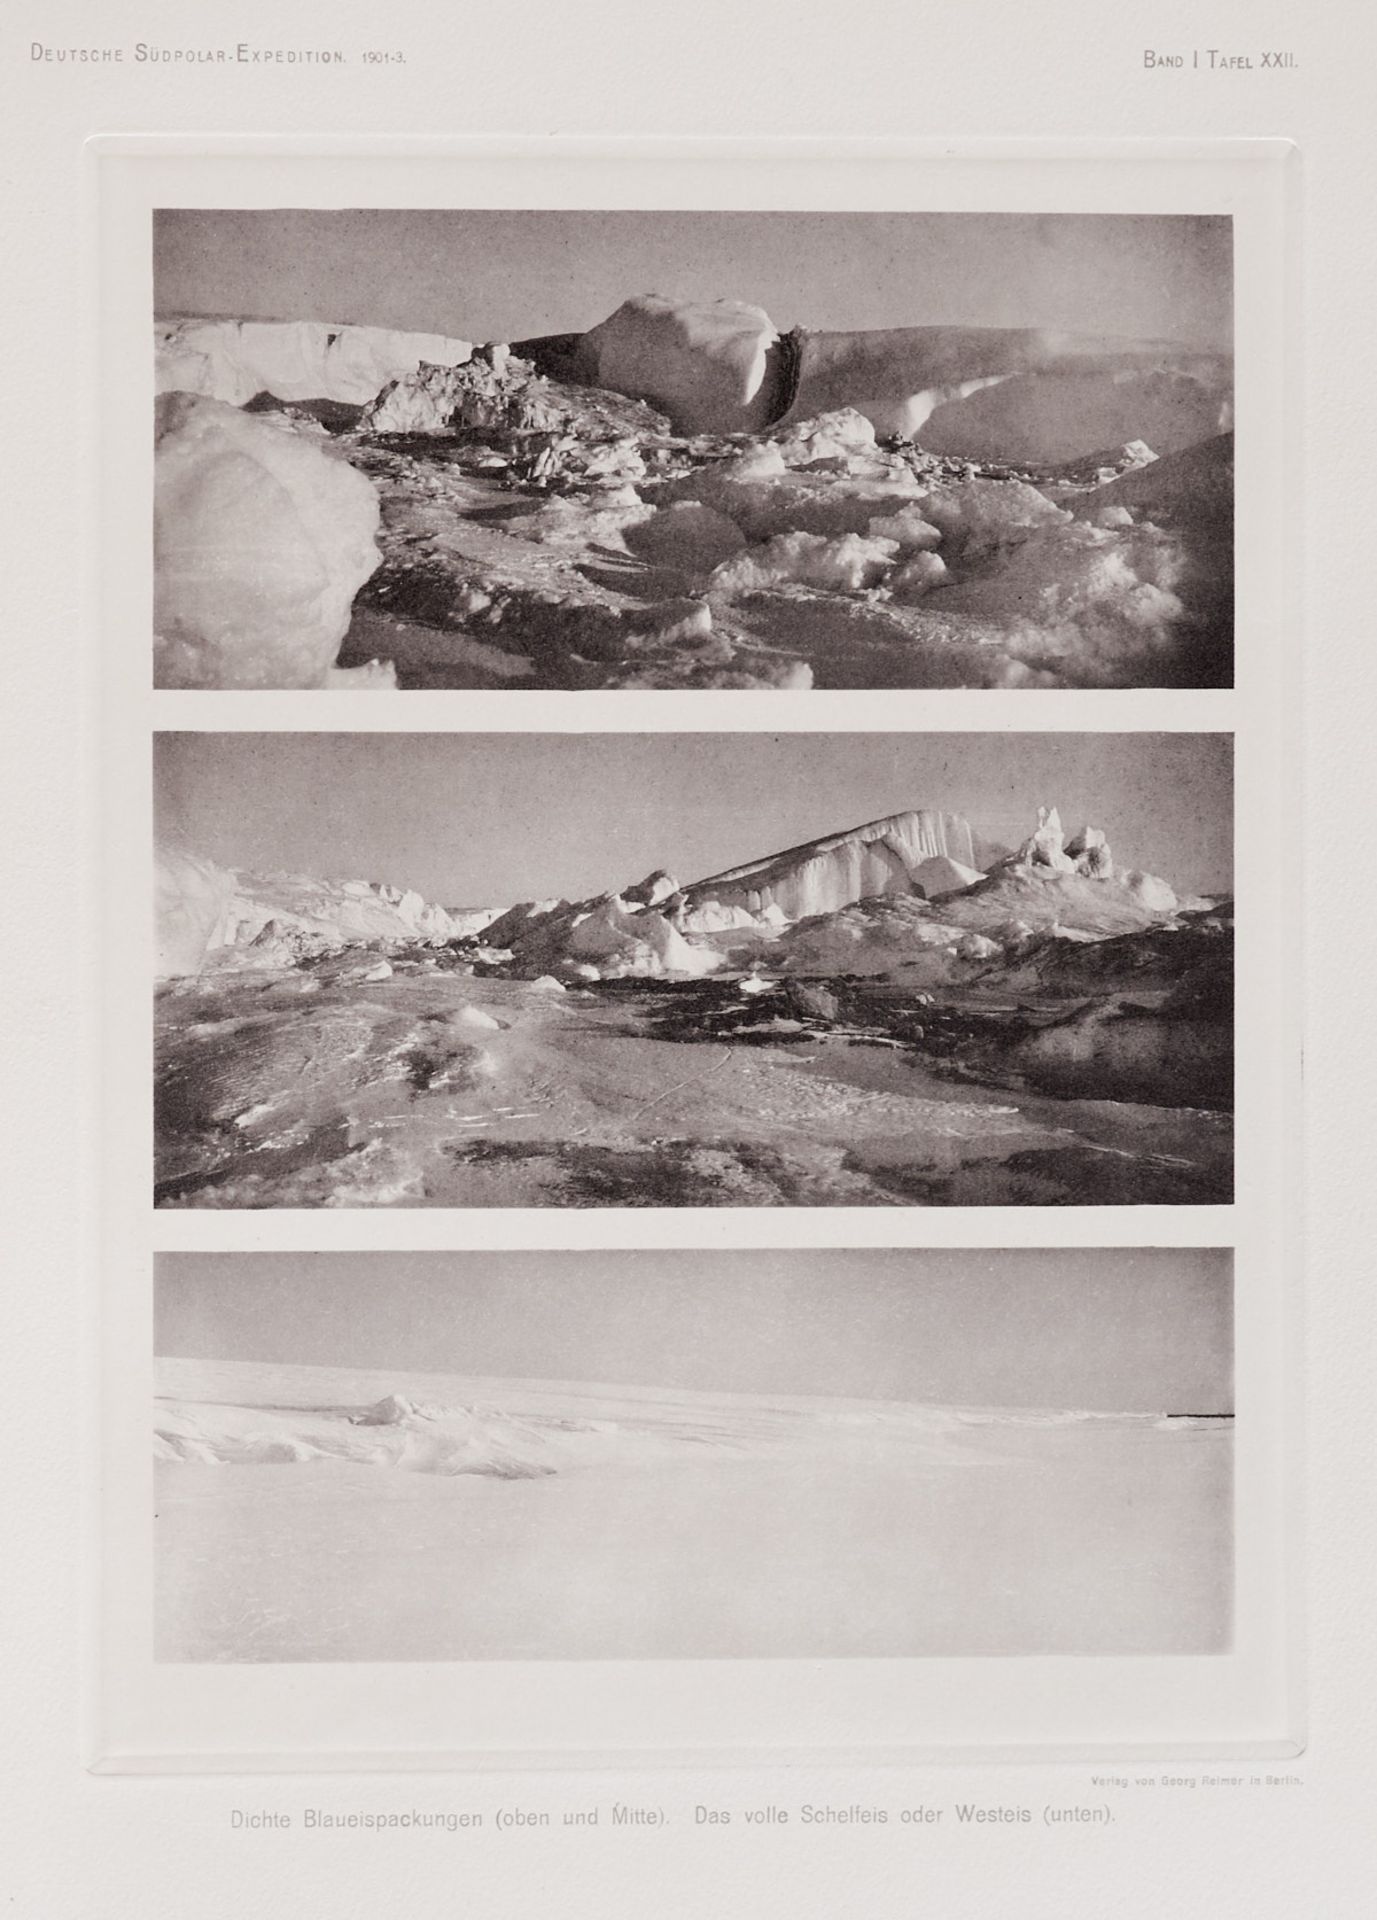 Arktis und Antarktis Komplette Reihe Drygalski, E. von, Deutsche Südpolar-Expedition 1901-1903 im - Bild 3 aus 7